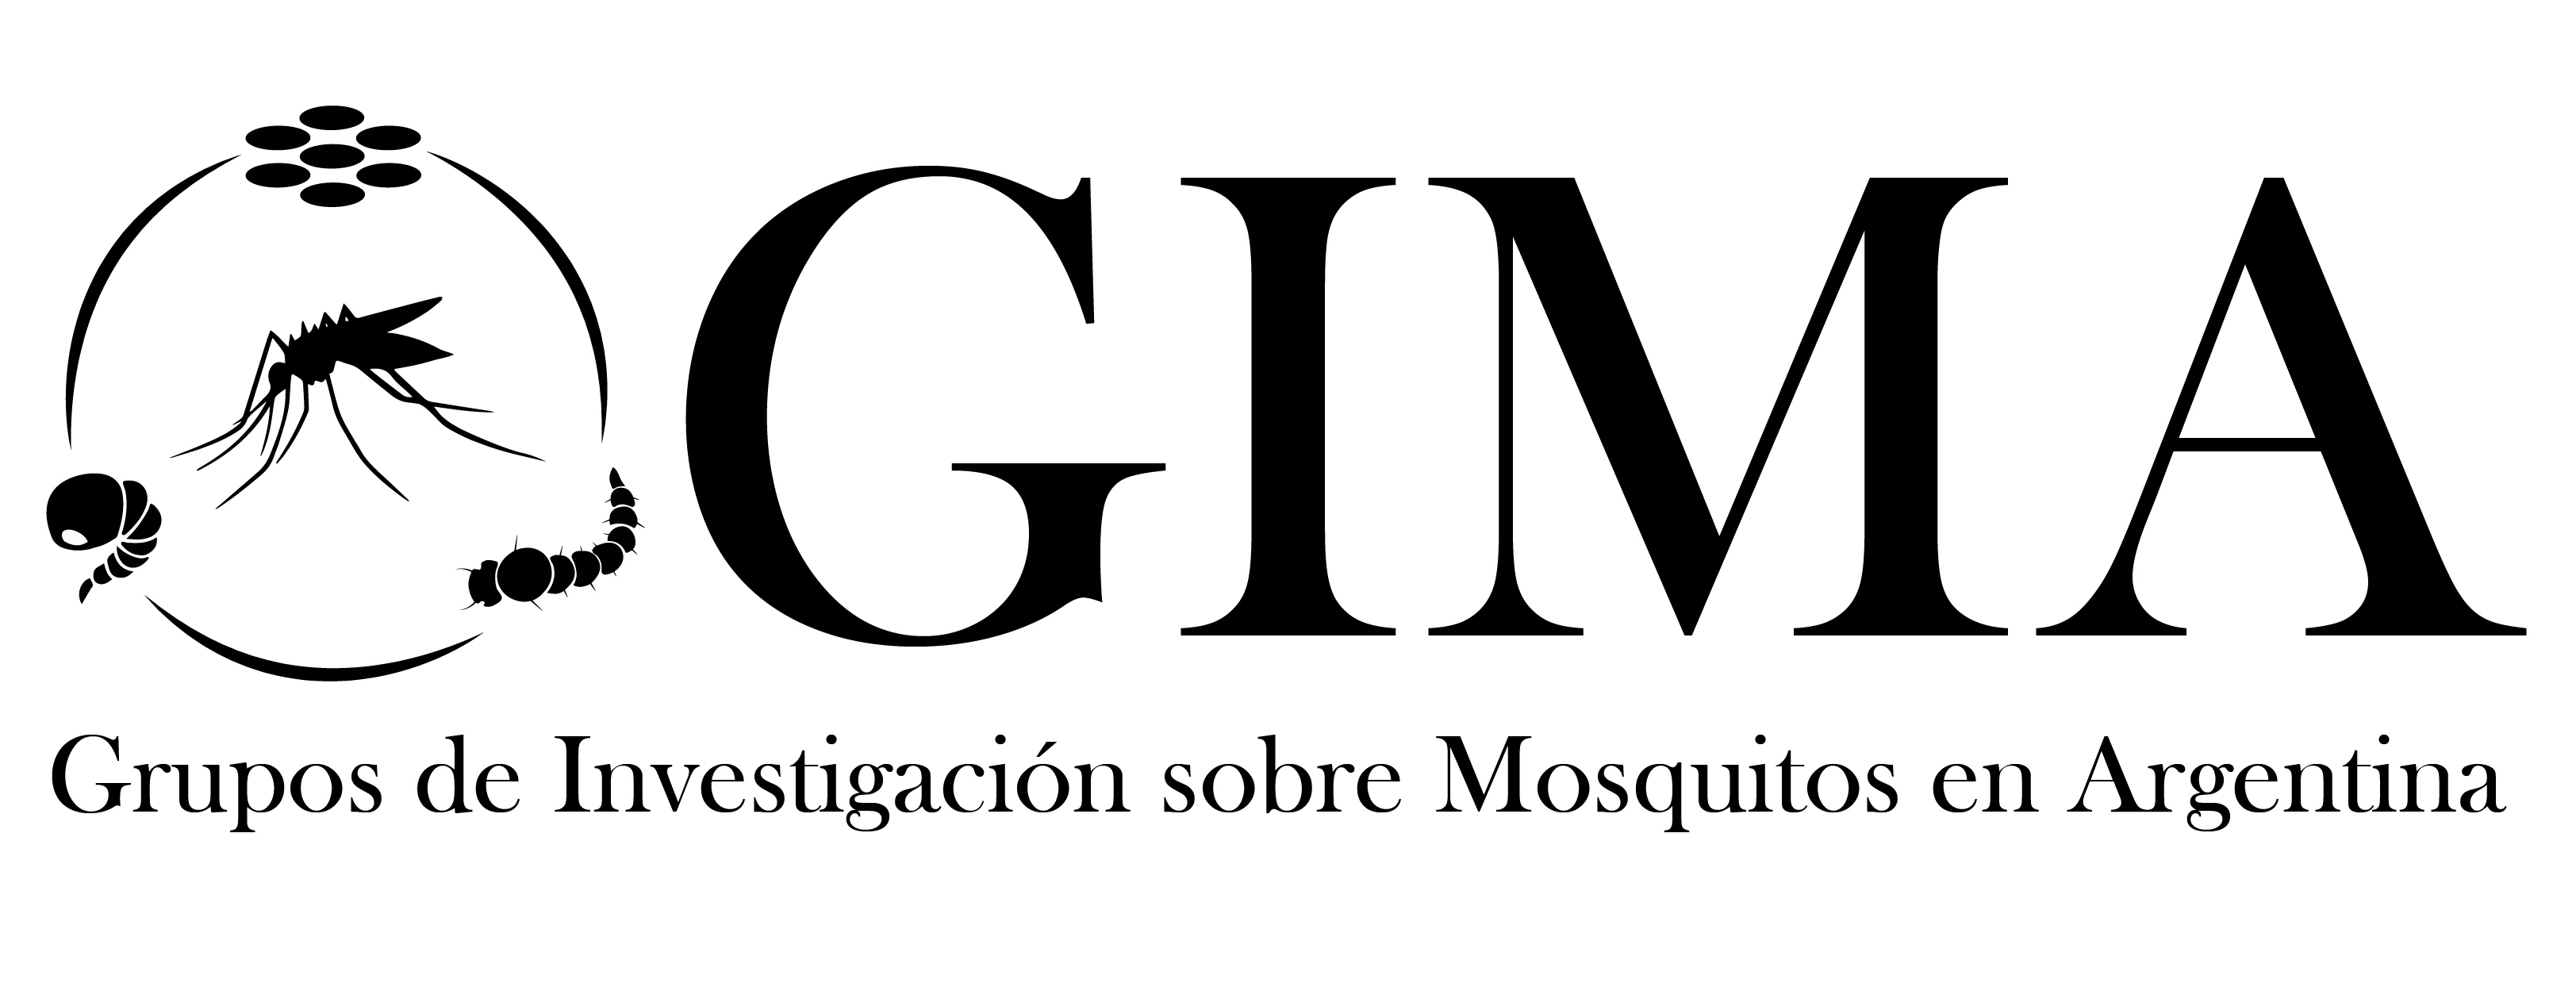 Blog Mosquitos Argentina